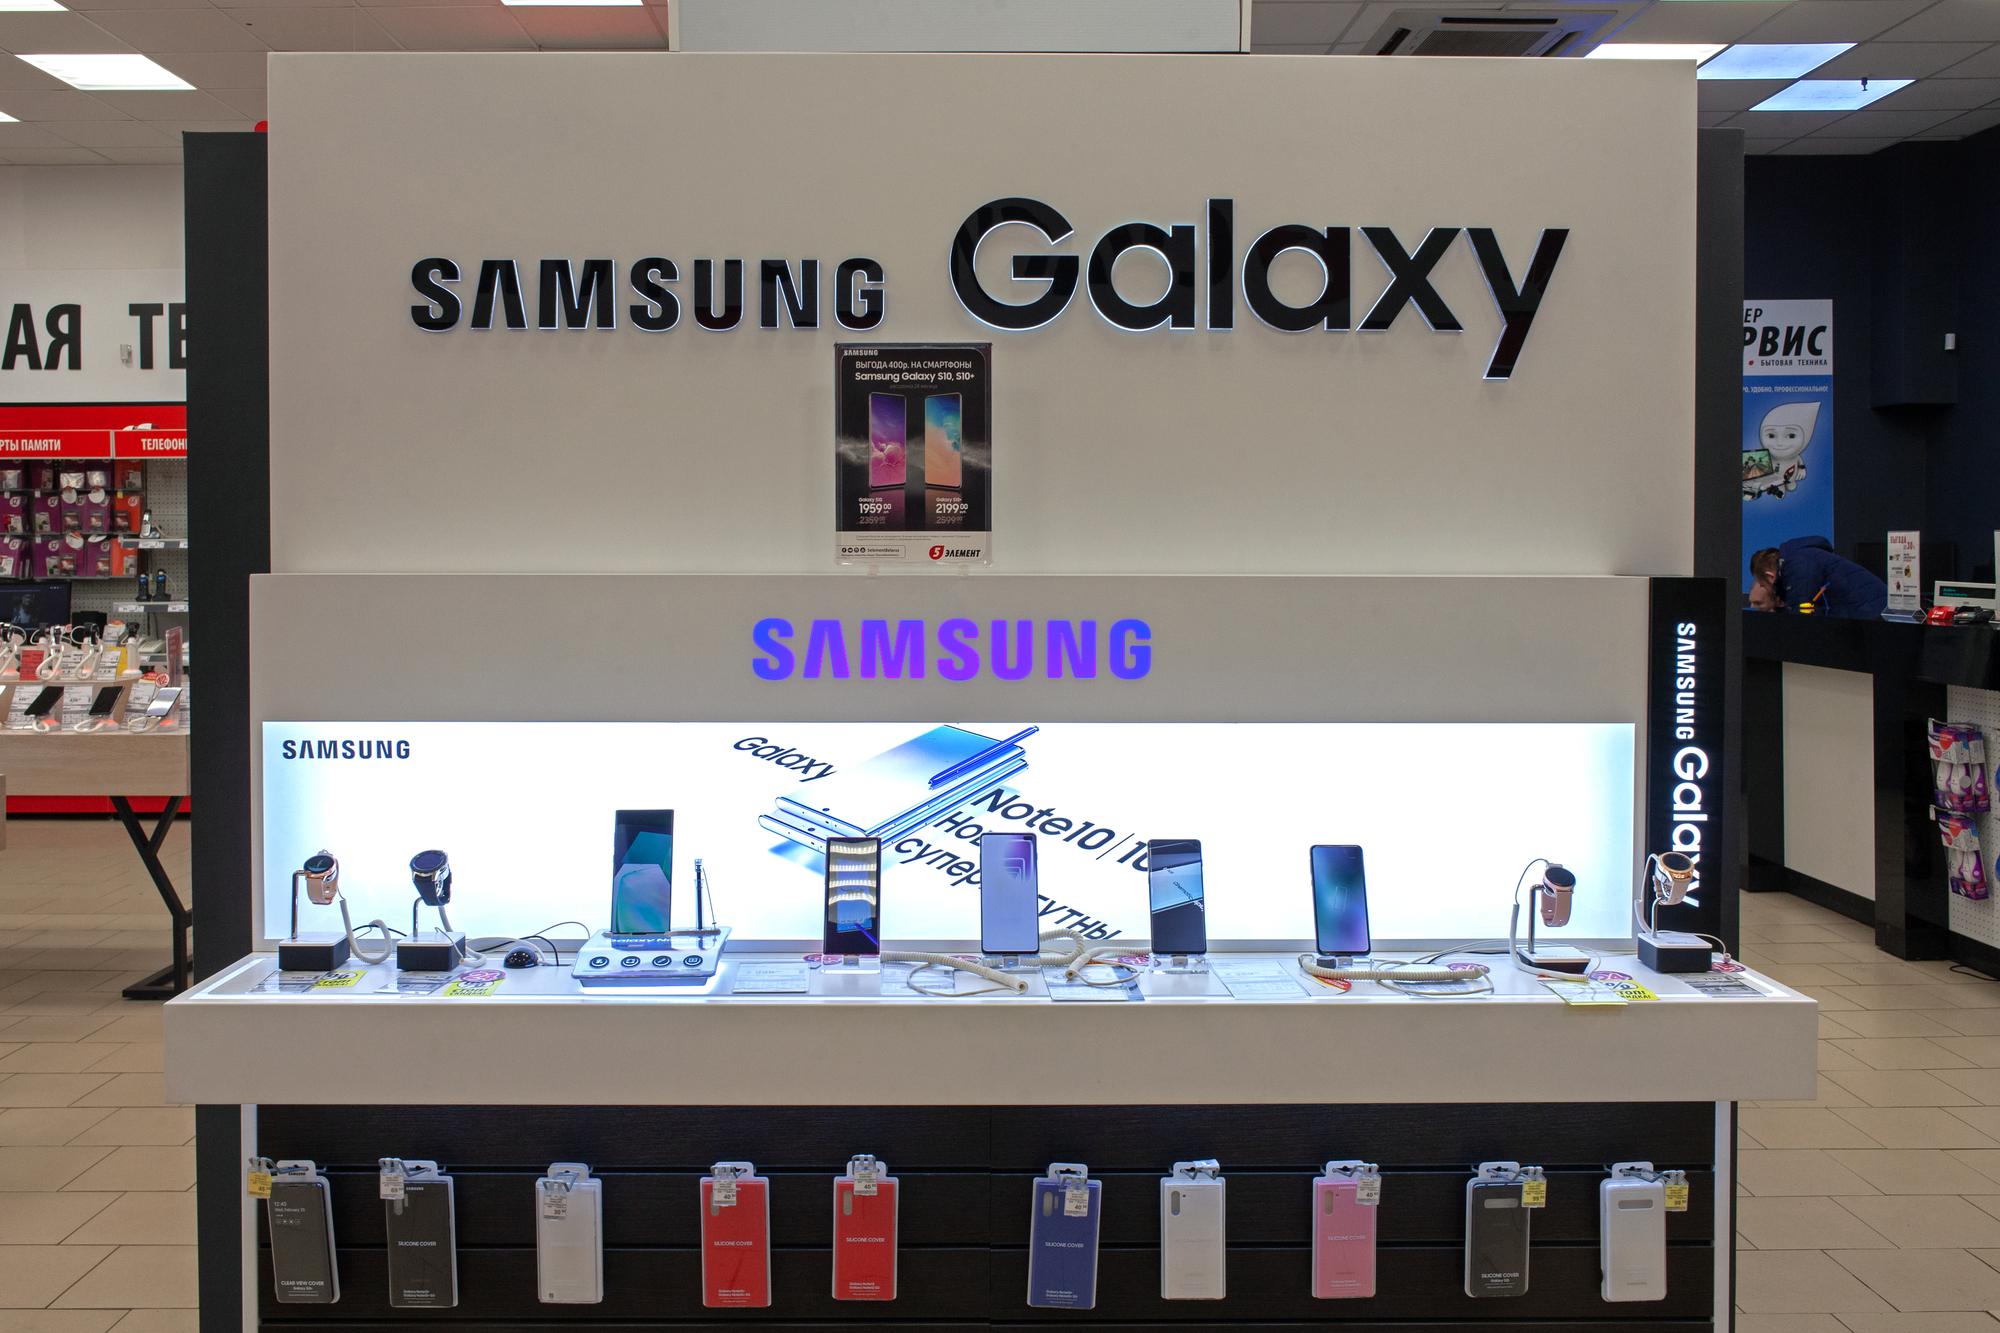 Ein Verkaufsstand mit Samsung Galaxy Smartphones